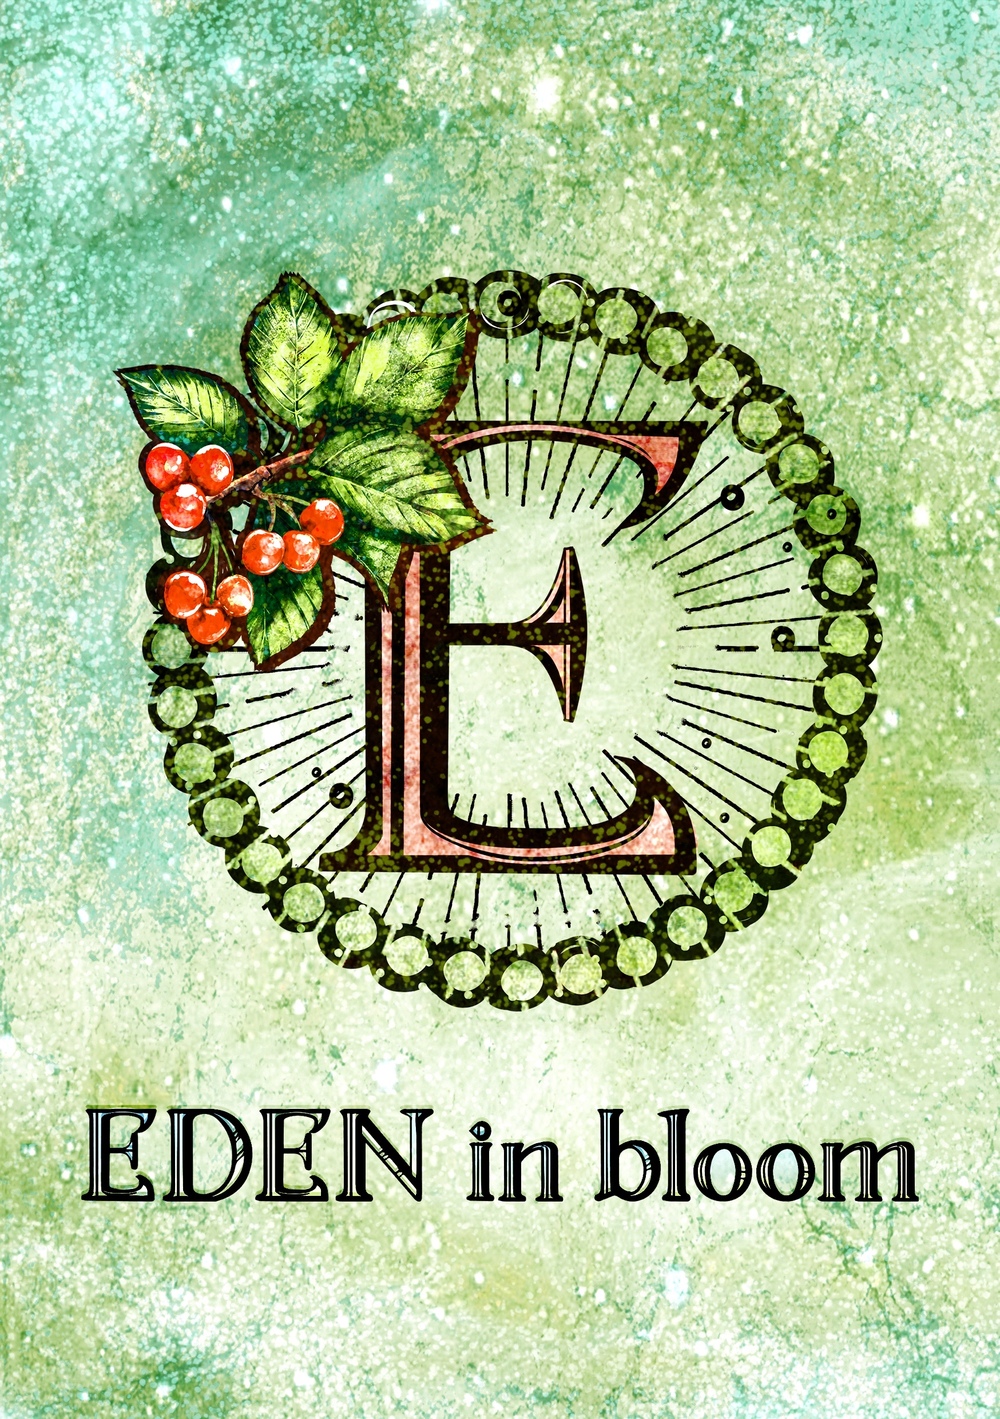 EDEN in bloom デザフェス58 事前整理券ご予約サイト【EDEN in bloom